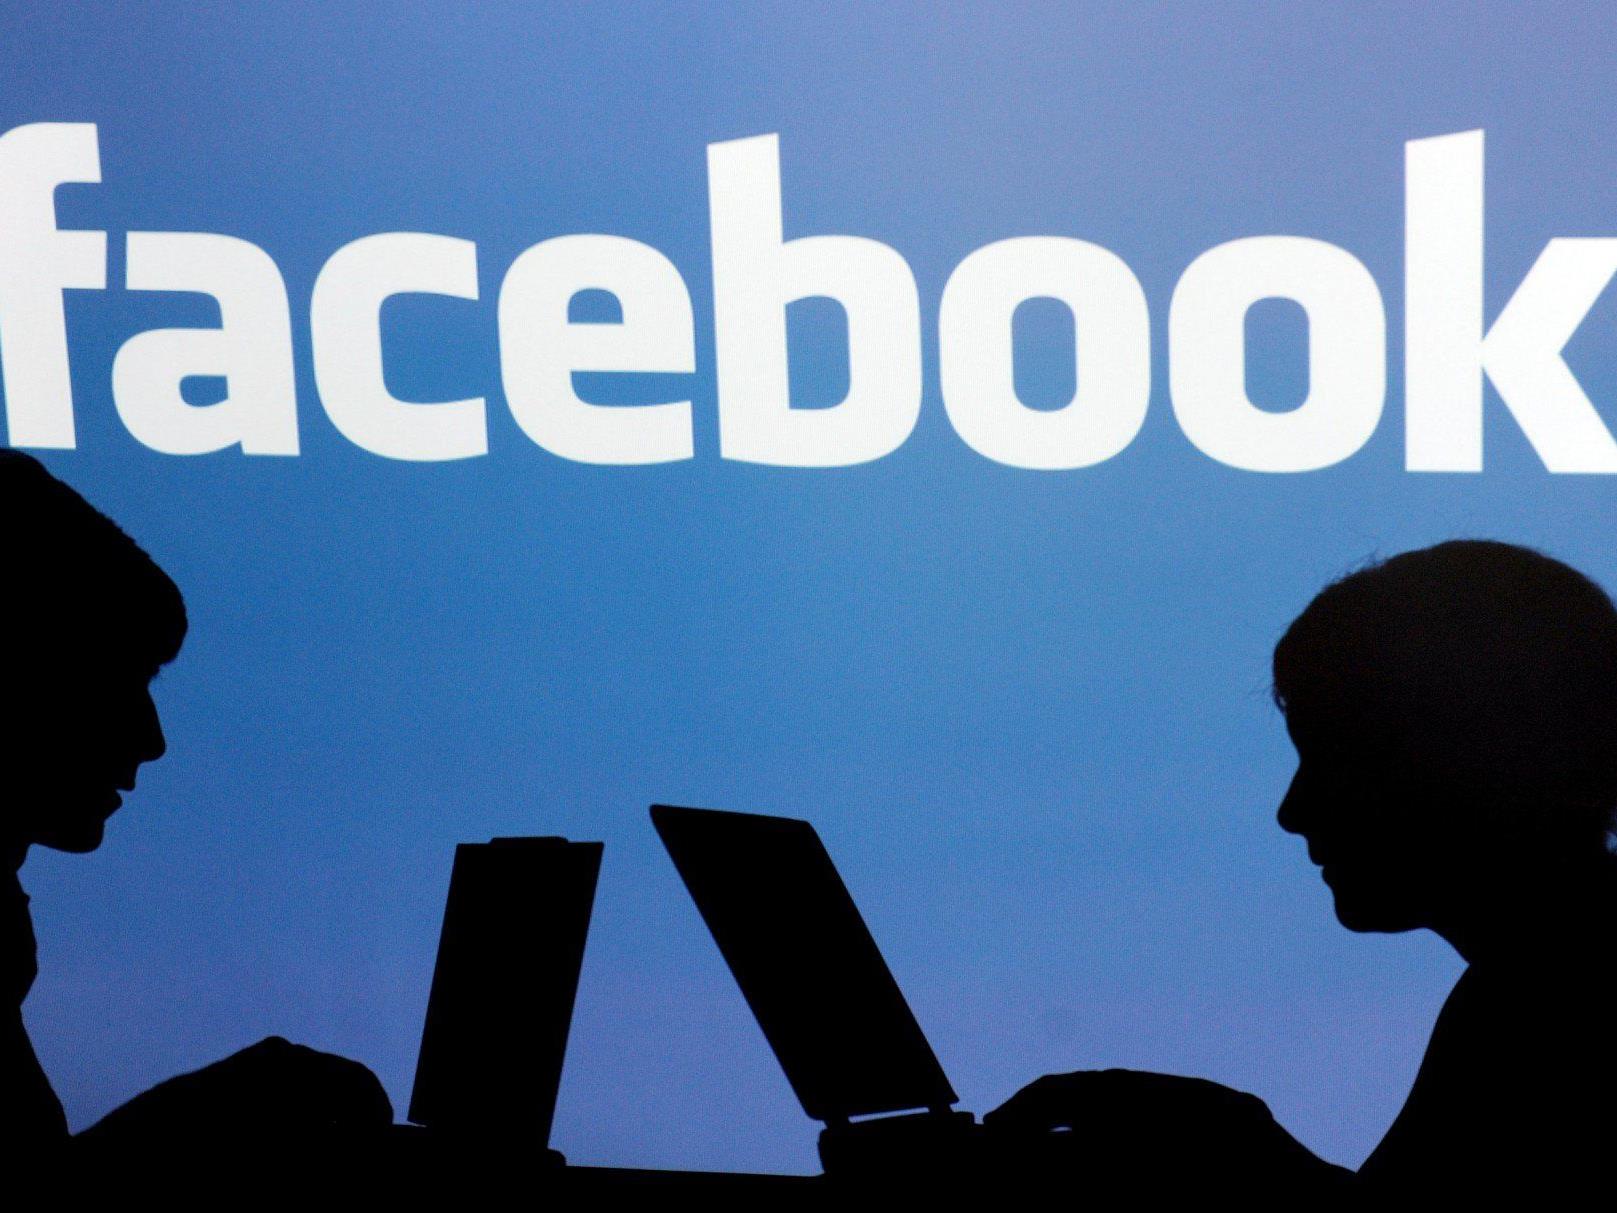 Nach dem starken Verlust überrascht die Facebook-Aktie nun mit einem rasanten Wachstum.